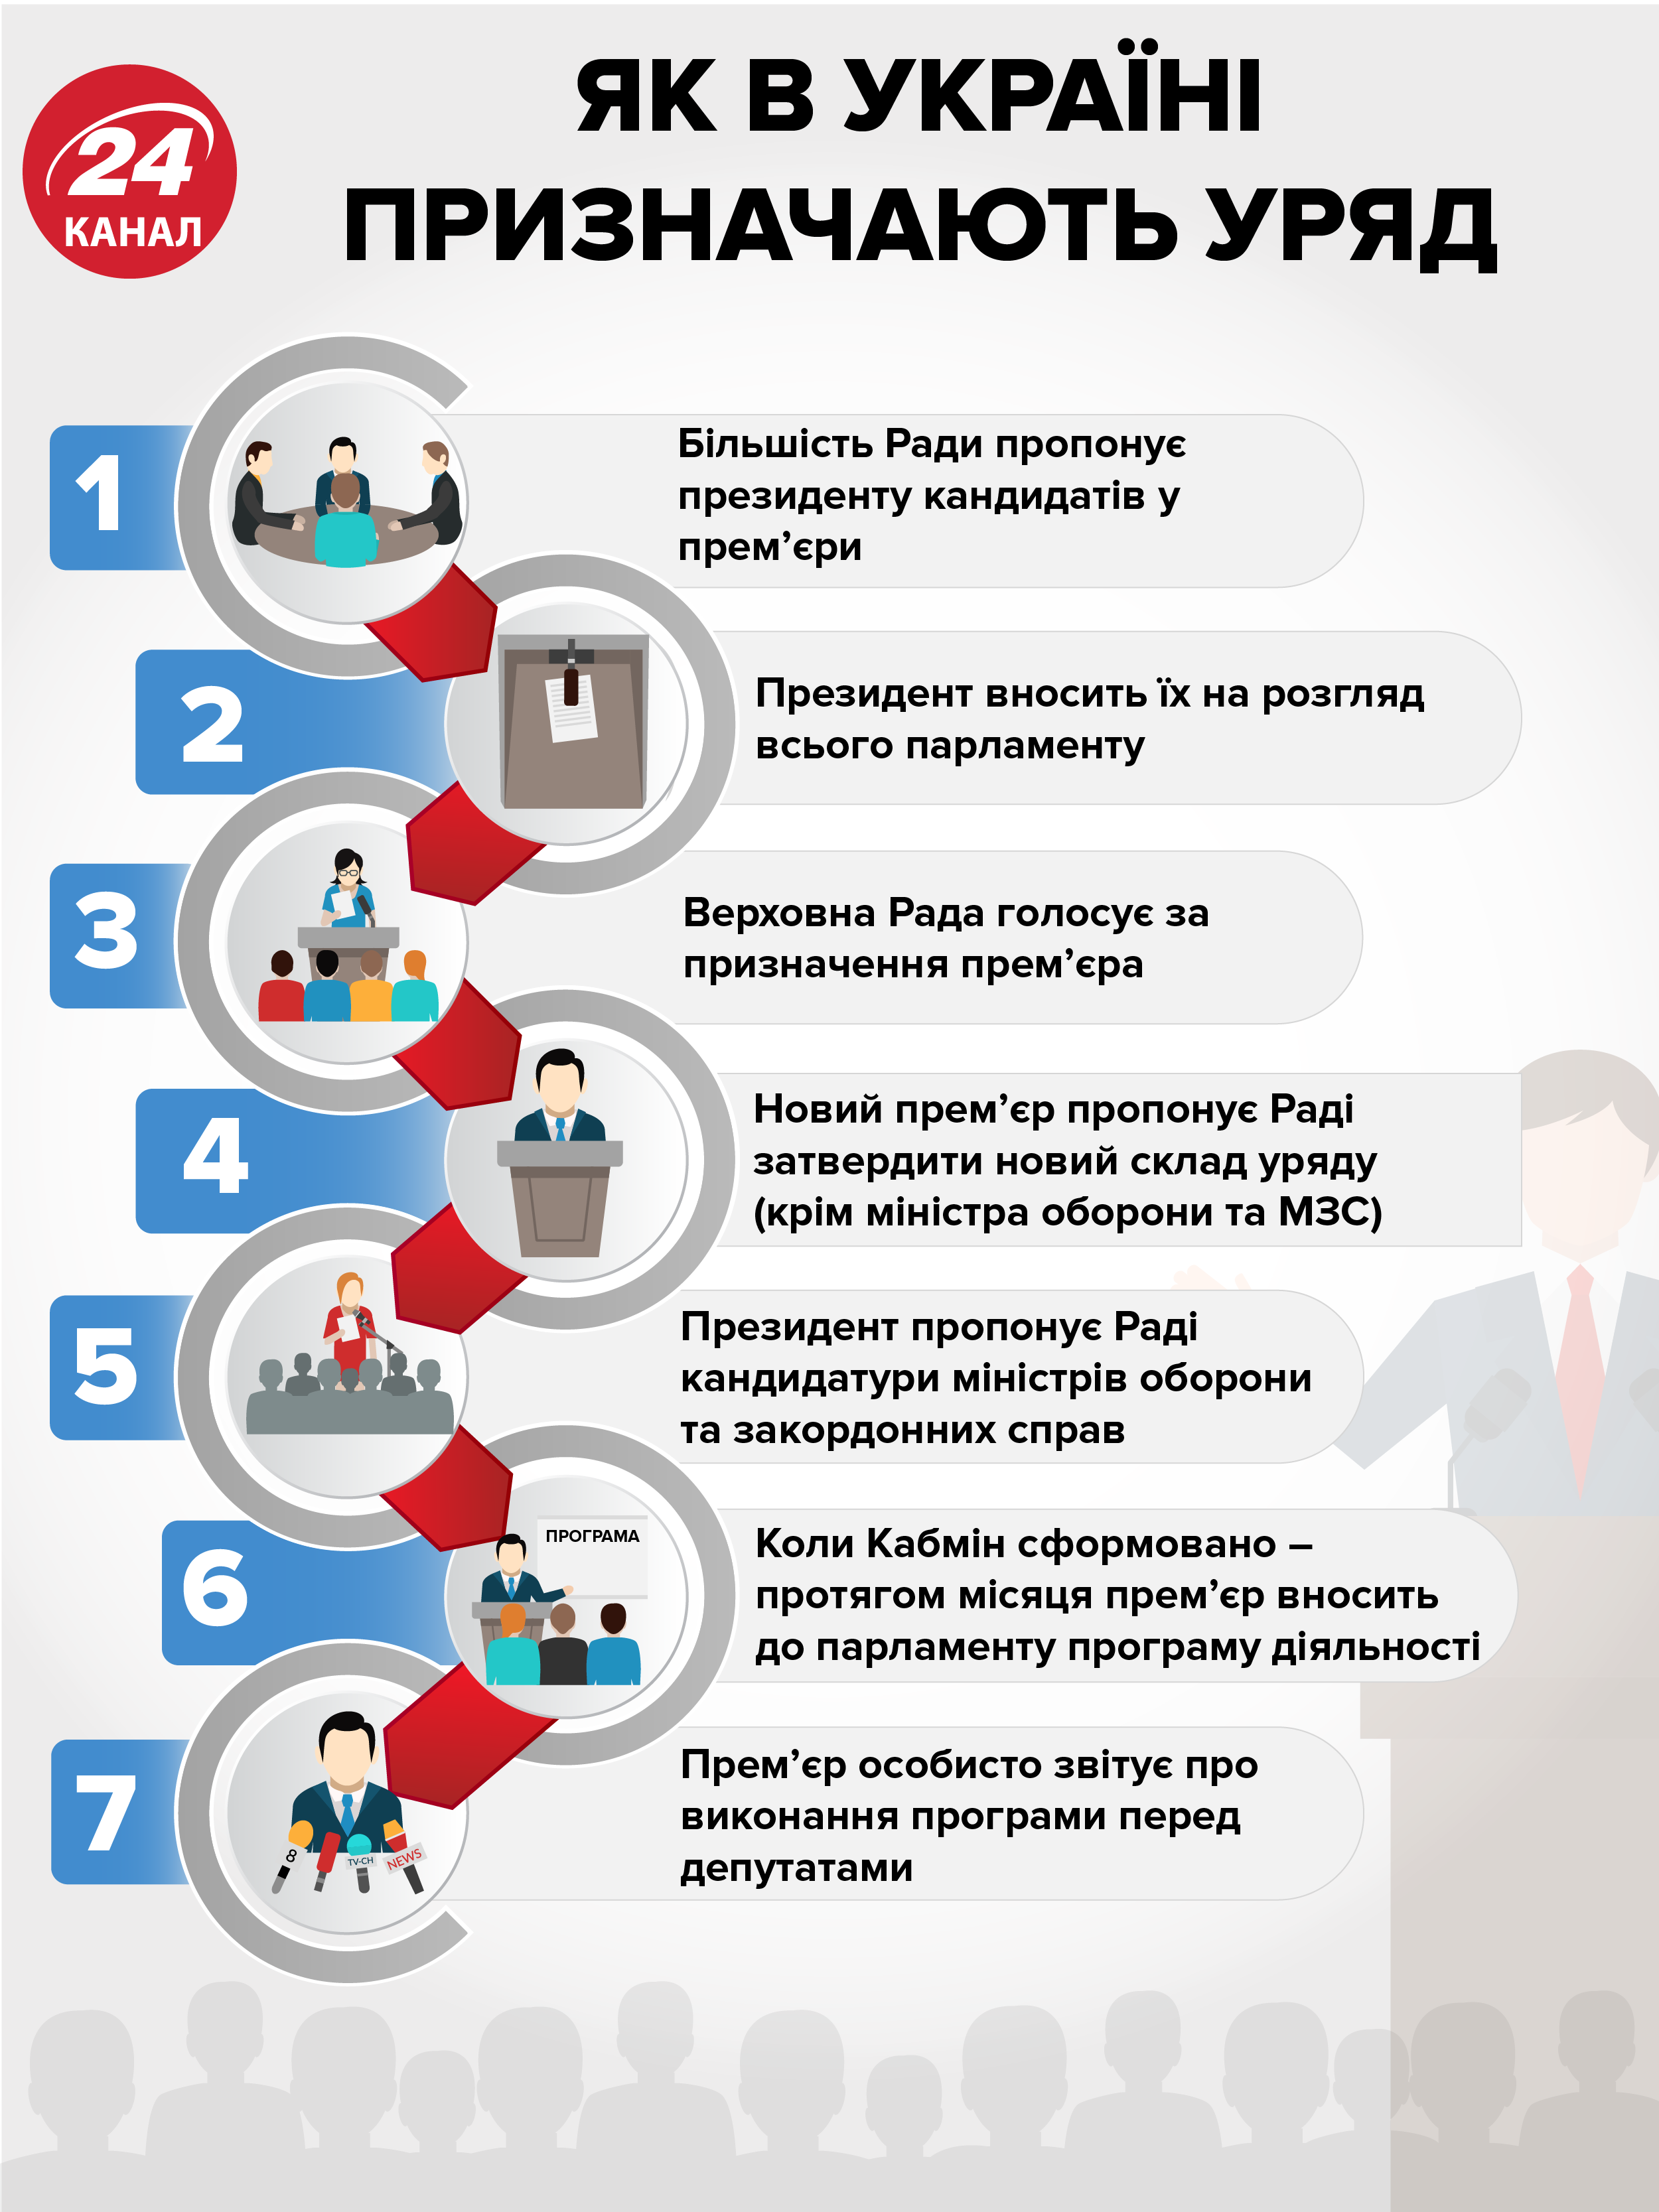 Реферат: Статусы кабинета министров Украины